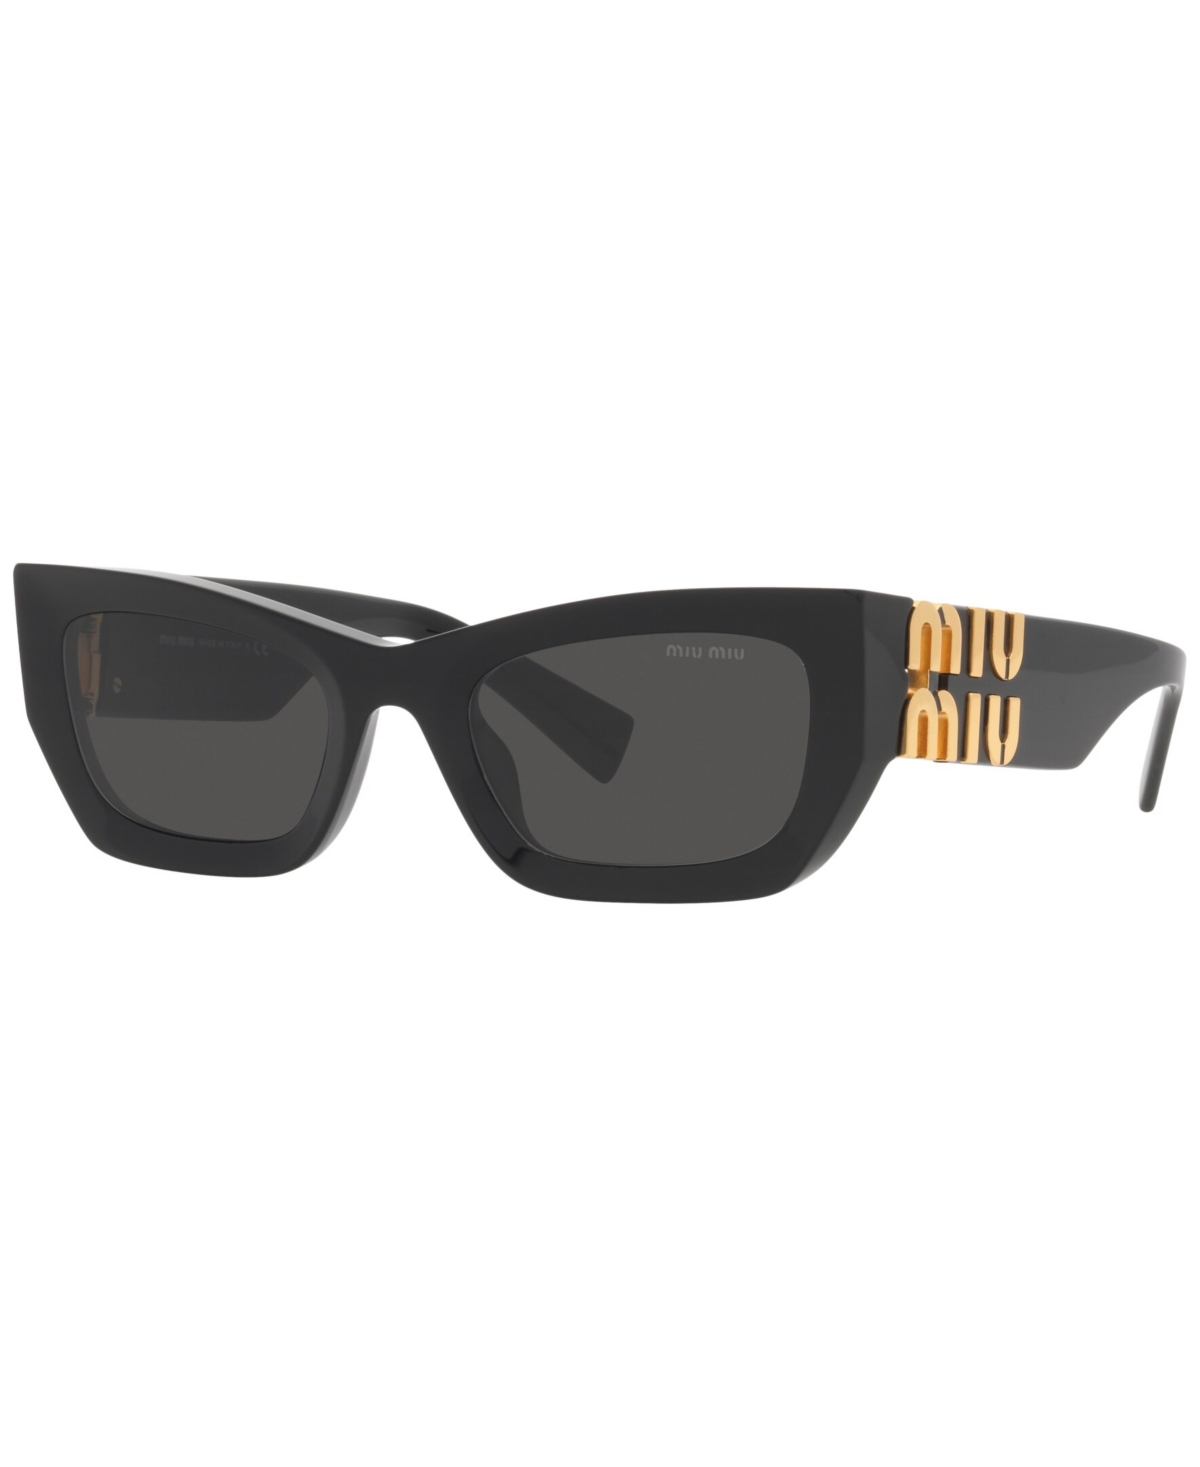 Miu Miu Women's Sunglasses, Mu 09ws In Black